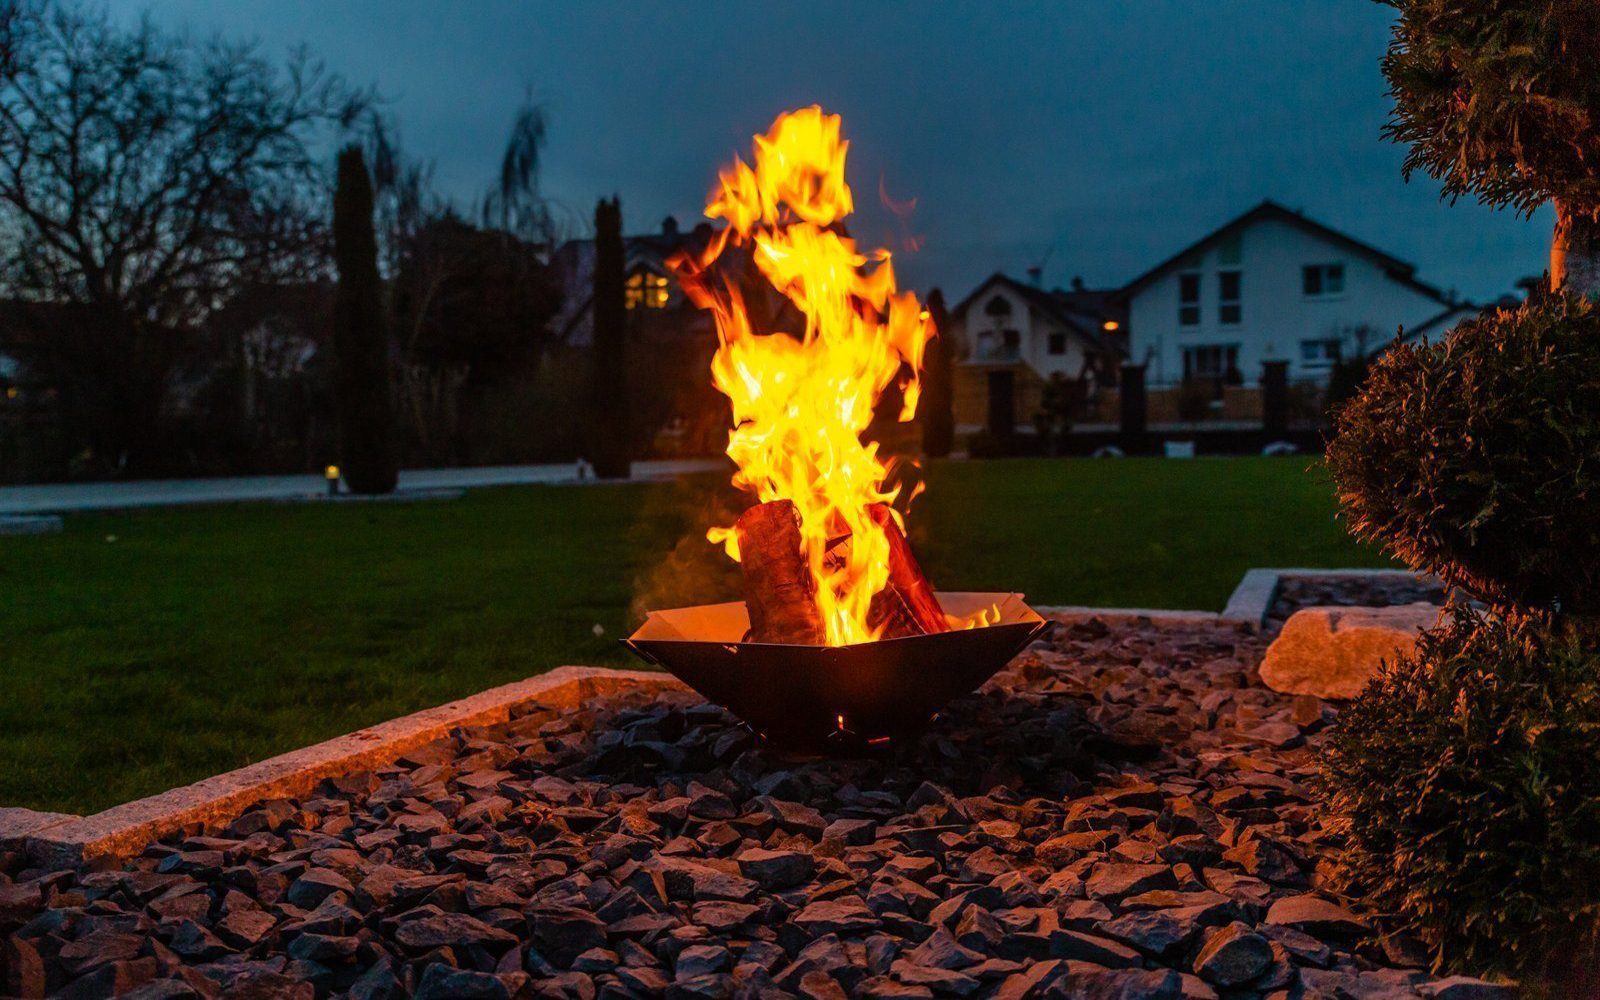 Brennendes Feuer in der Feuerschale Hexagon bei Dunkelheit im Garten..